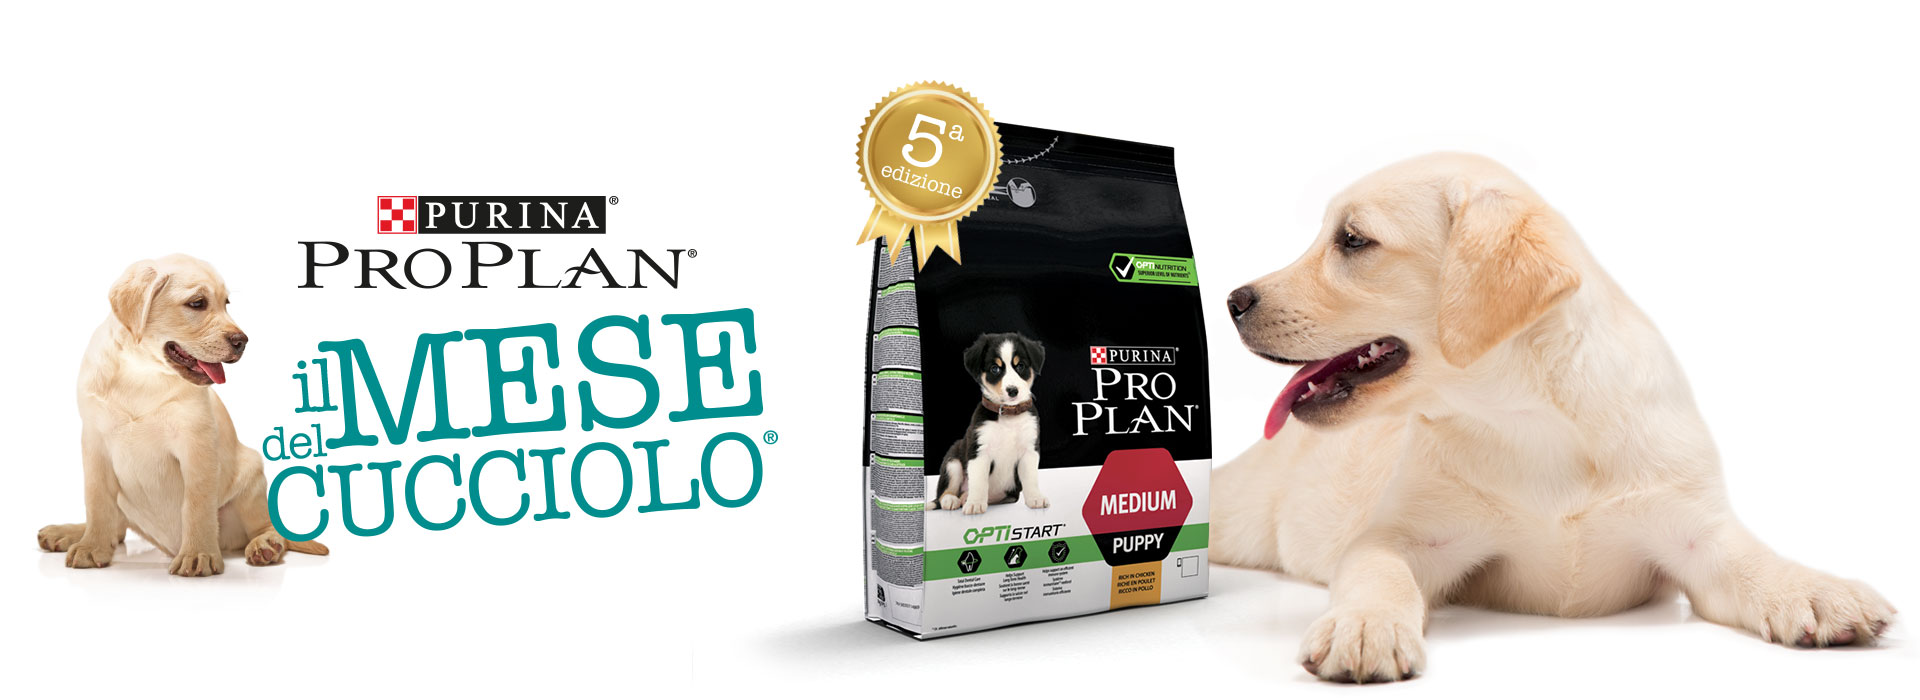 Mese del Cucciolo Purina Pro Plan confezione logo spot pubblicitario